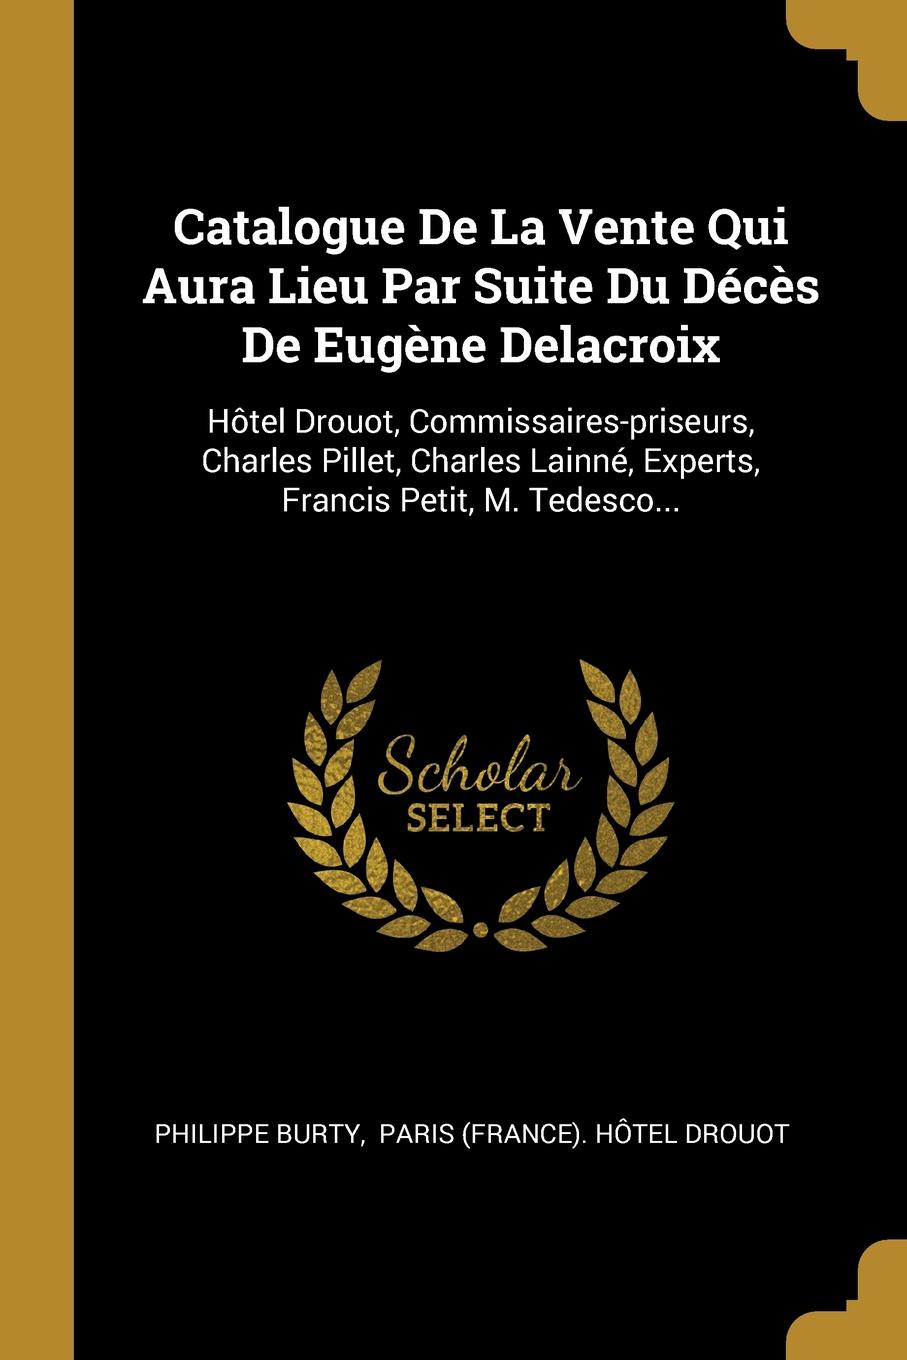 Catalogue De La Vente Qui Aura Lieu Par Suite Du Deces De Eugene Delacroix. Hotel Drouot, Commissaires-priseurs, Charles Pillet, Charles Lainne, Experts, Francis Petit, M. Tedesco...